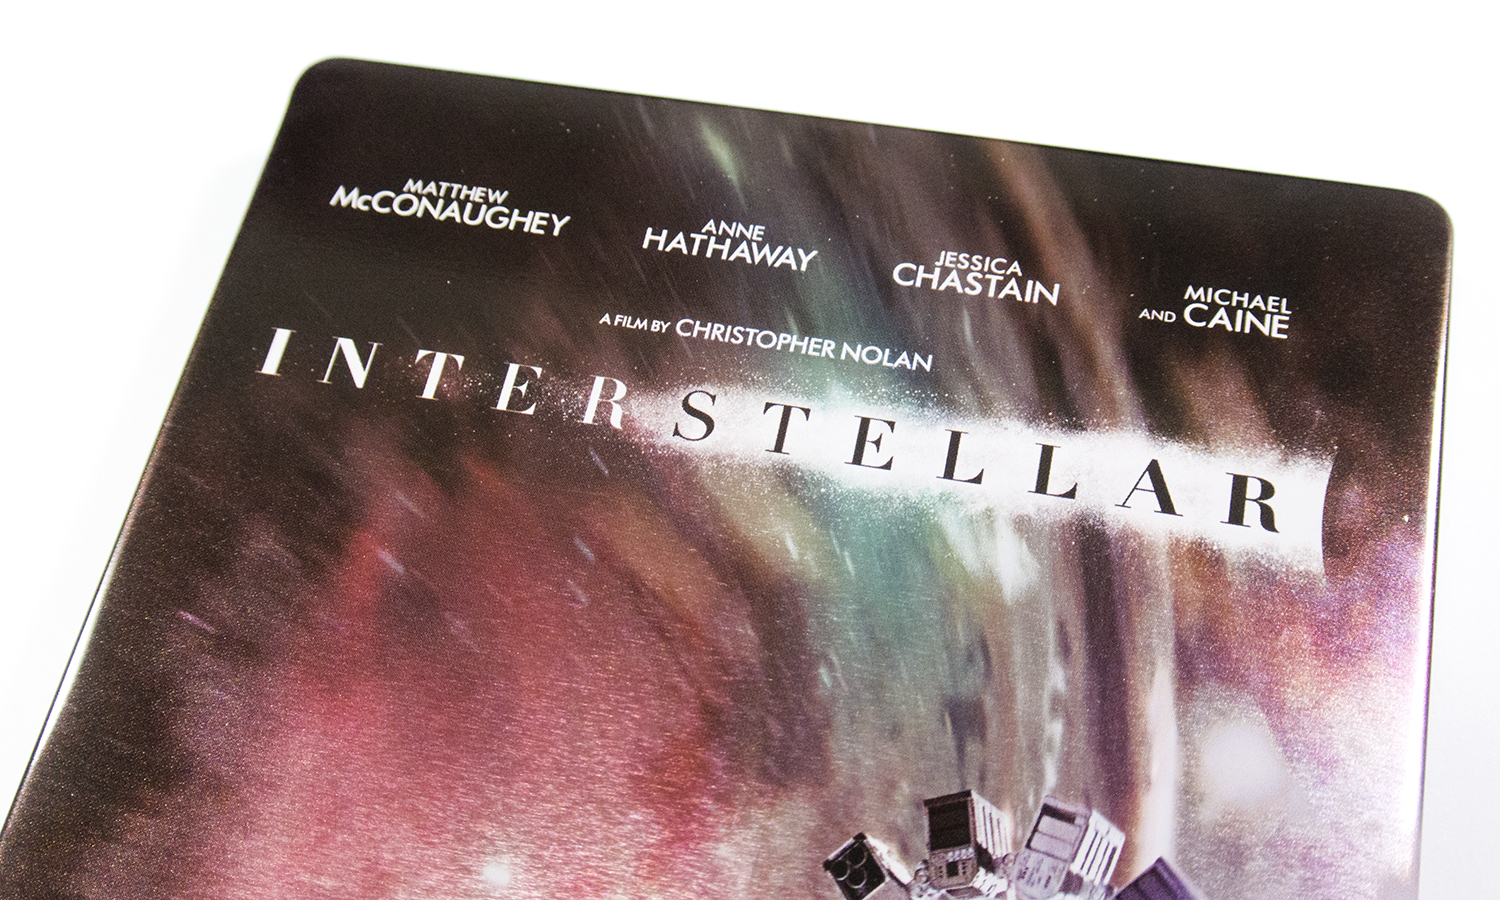 Interstellar HDzeta steelbook